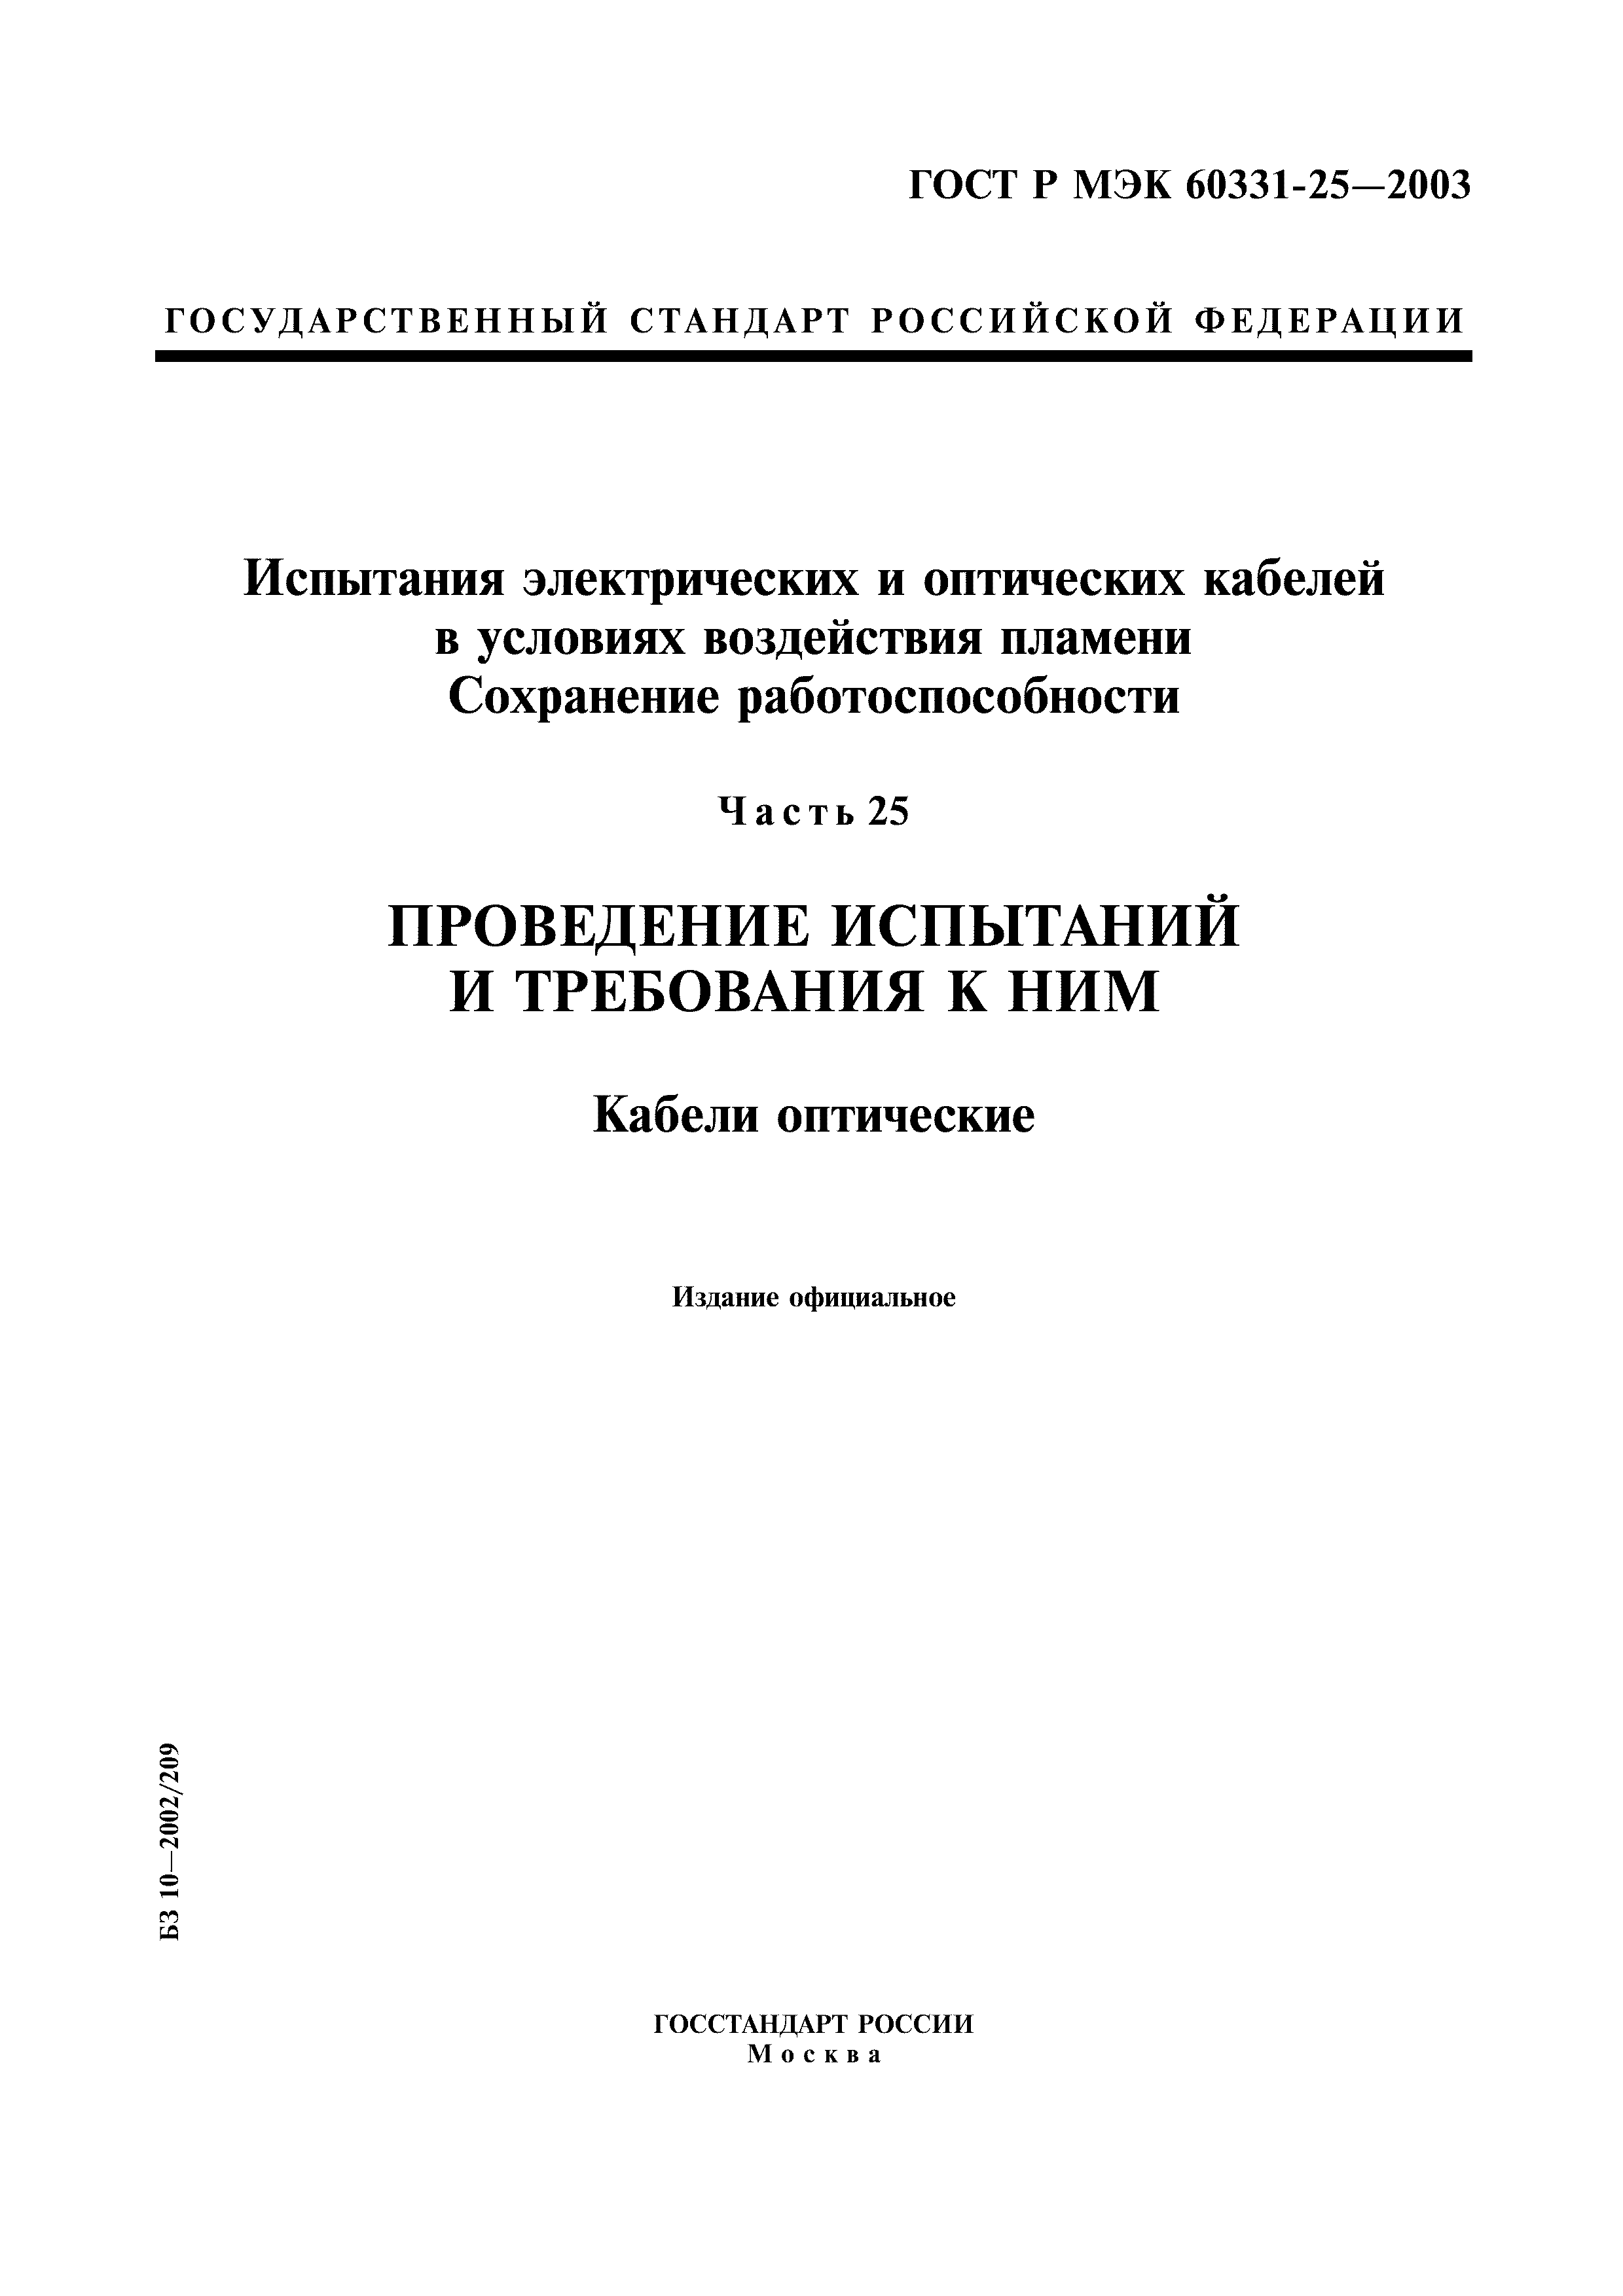 ГОСТ Р МЭК 60331-25-2003